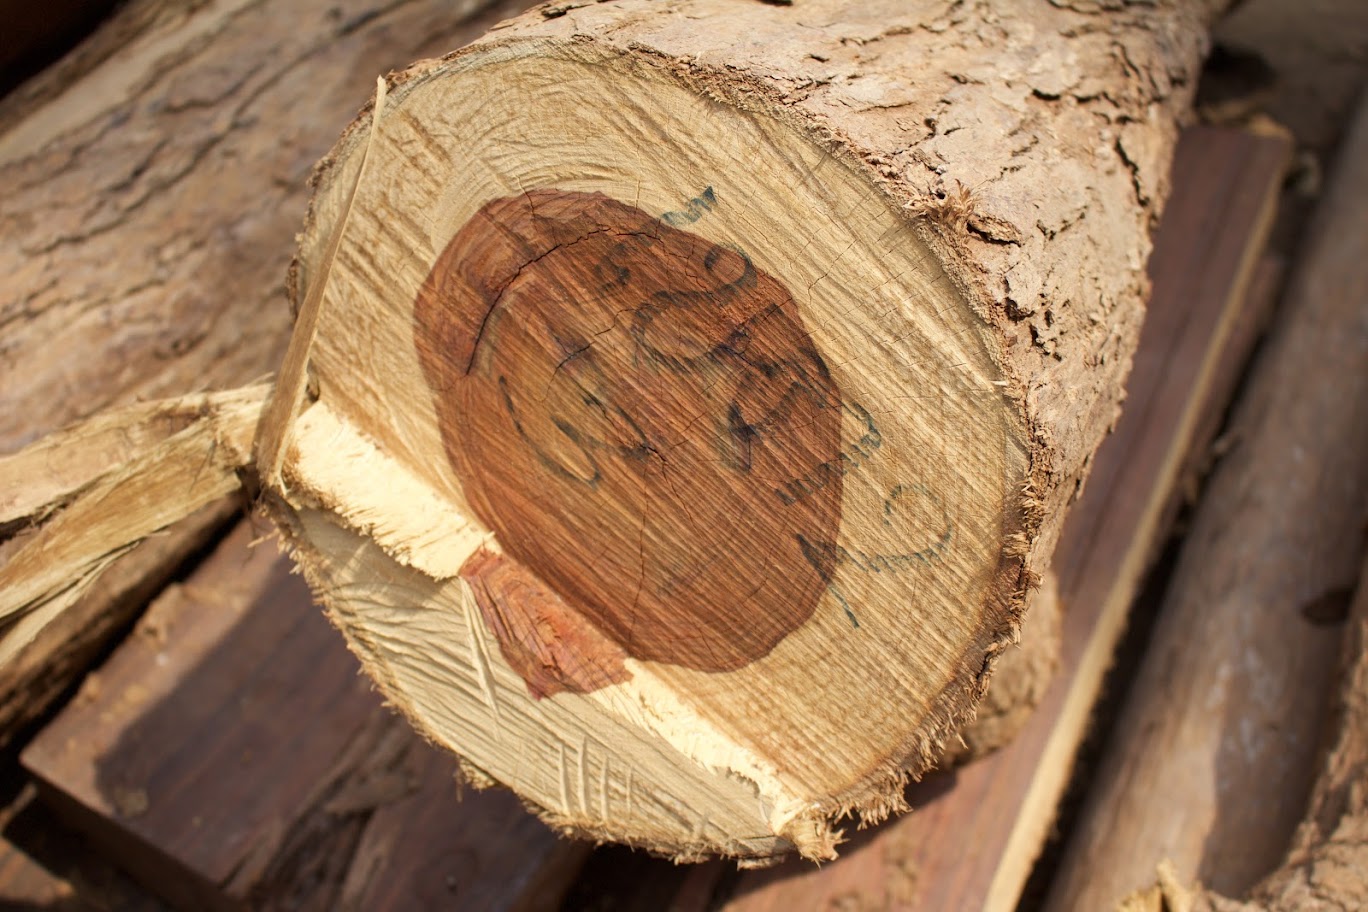 CITES Timber Inspection Workshop 25-29 October 2021